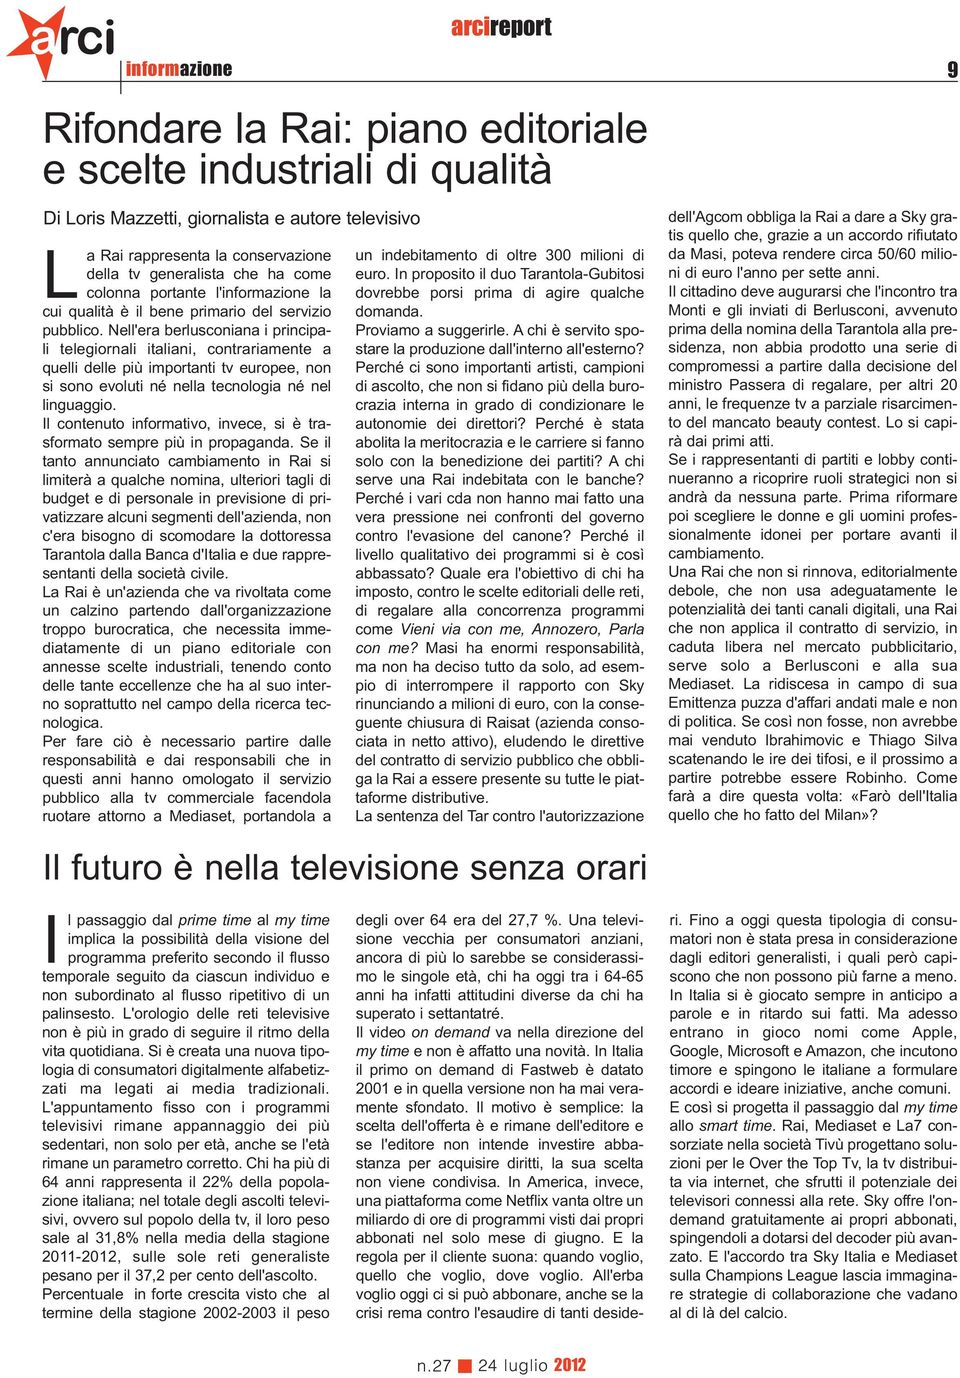 Nell'era berlusconiana i principali telegiornali italiani, contrariamente a quelli delle più importanti tv europee, non si sono evoluti né nella tecnologia né nel linguaggio.